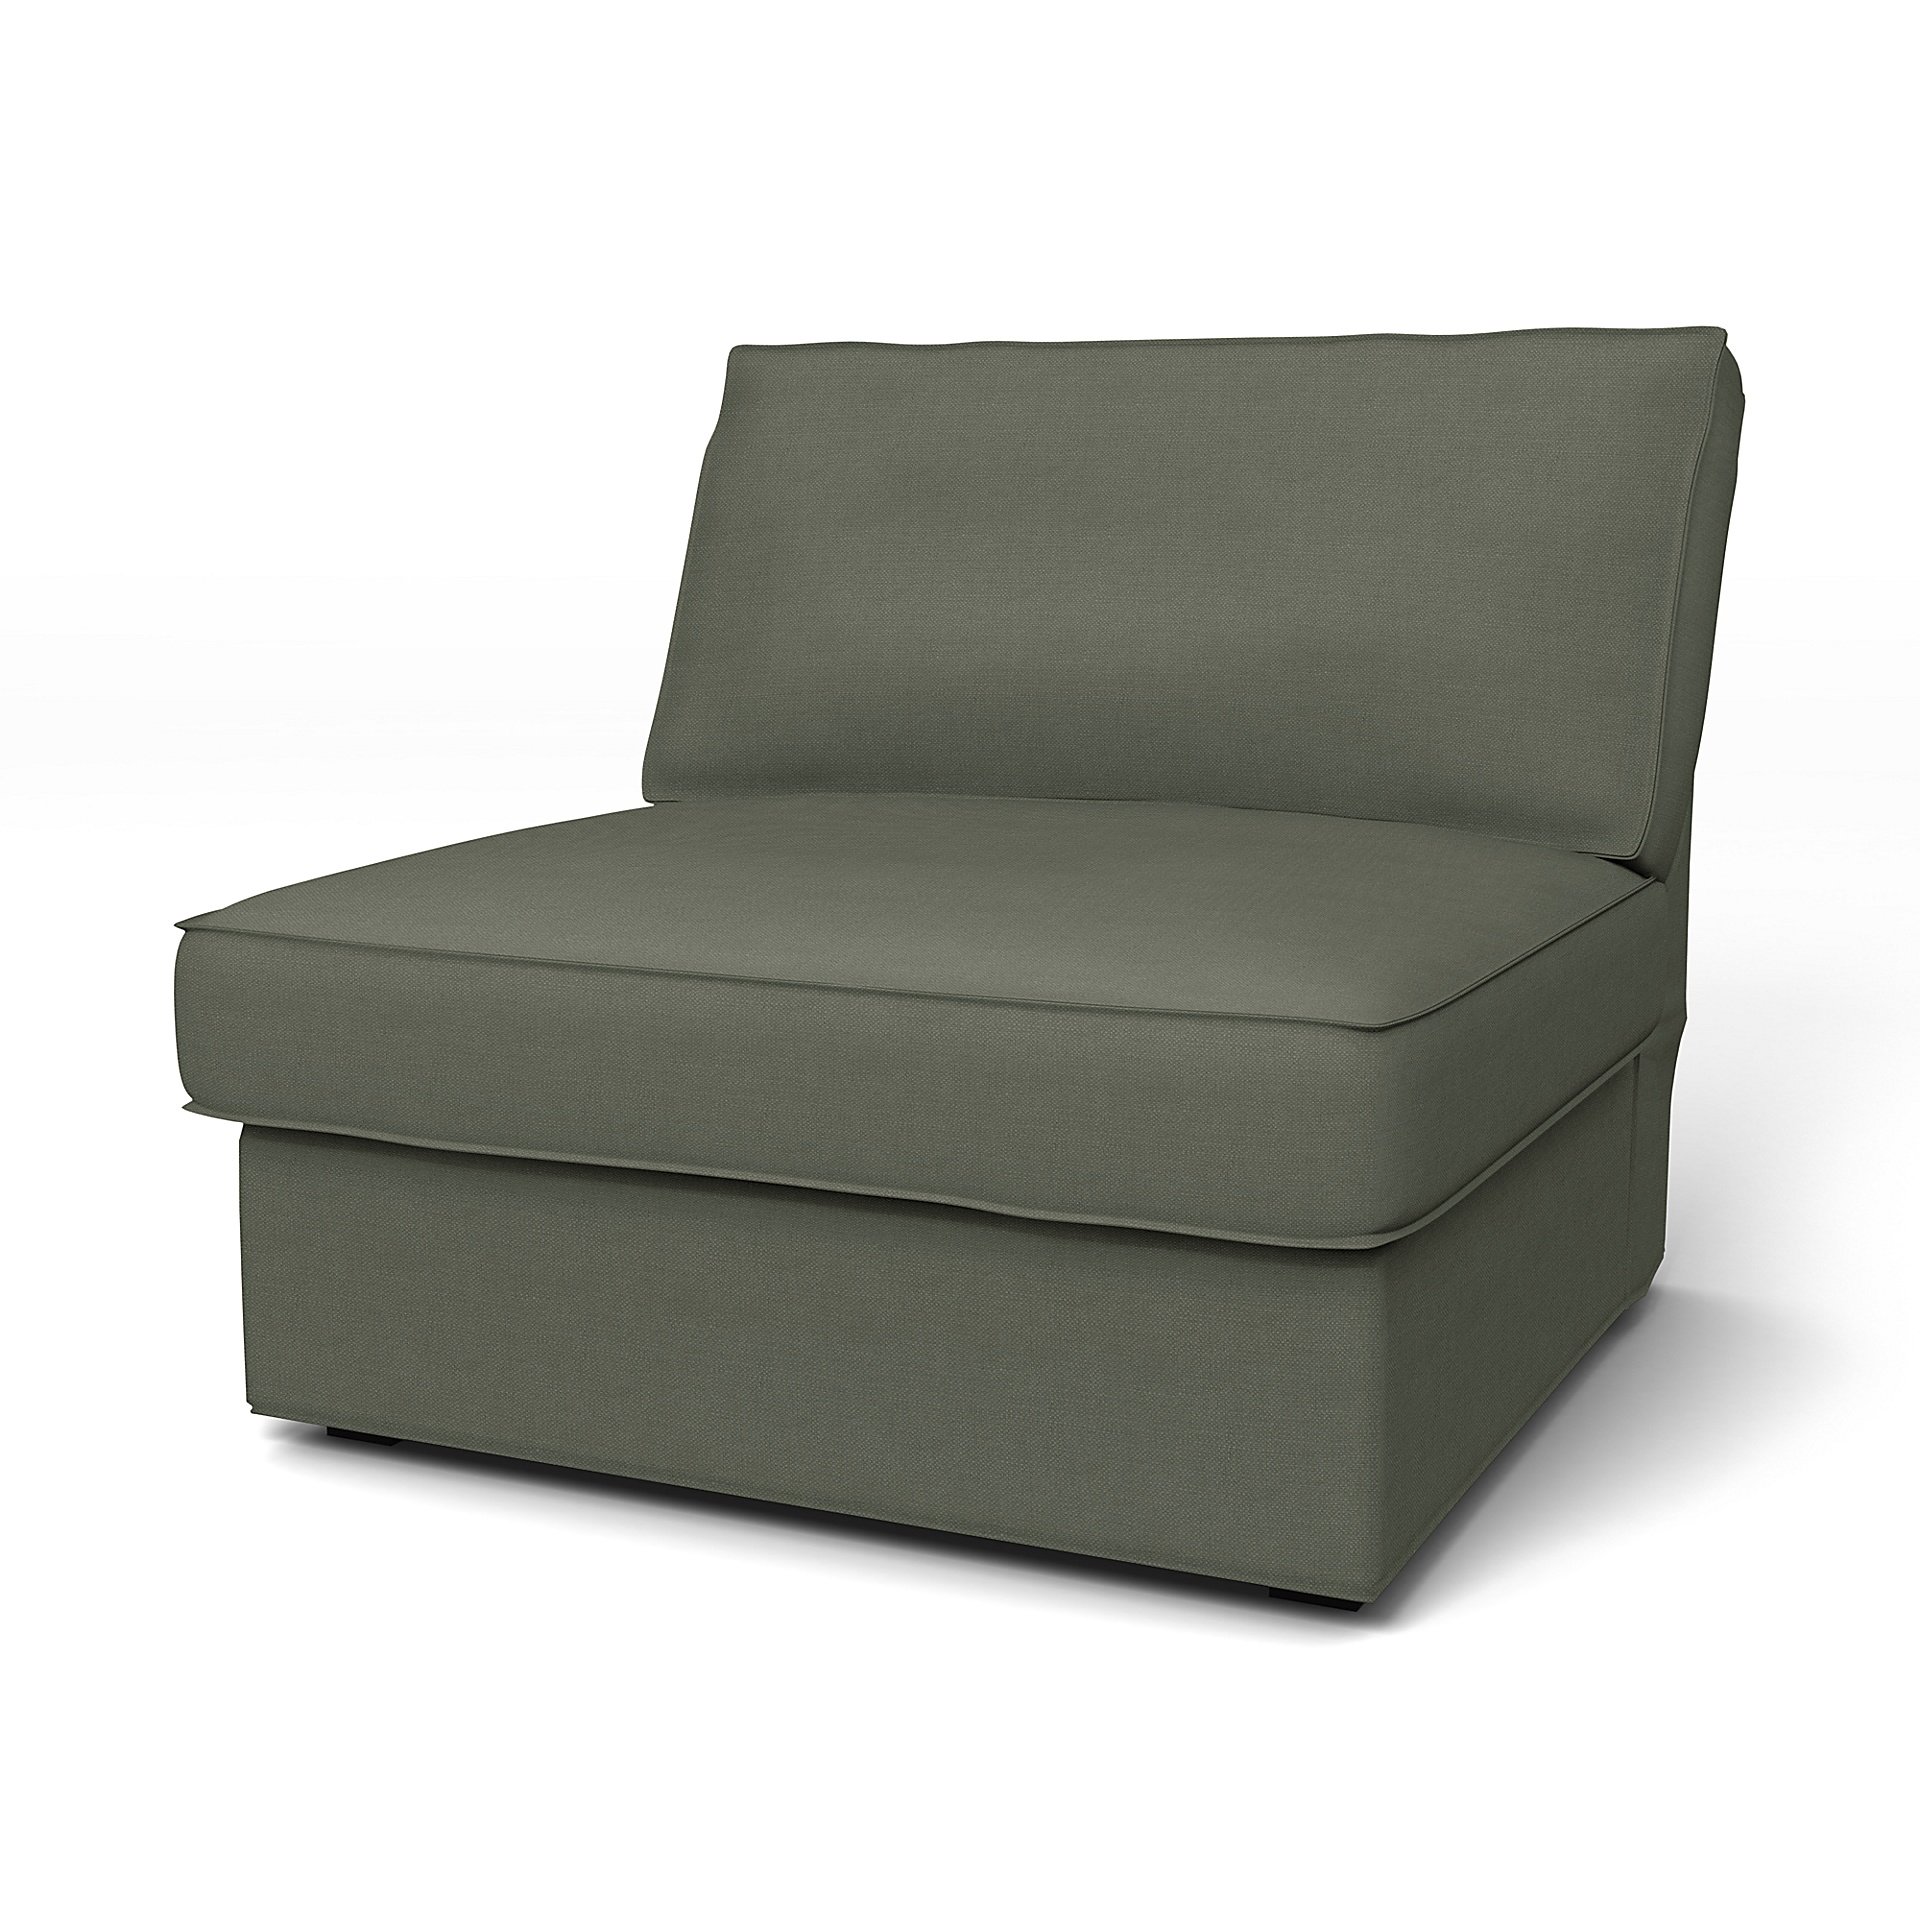 IKEA - Kivik 1 Seater Chair Cover, Rosemary, Linen - Bemz